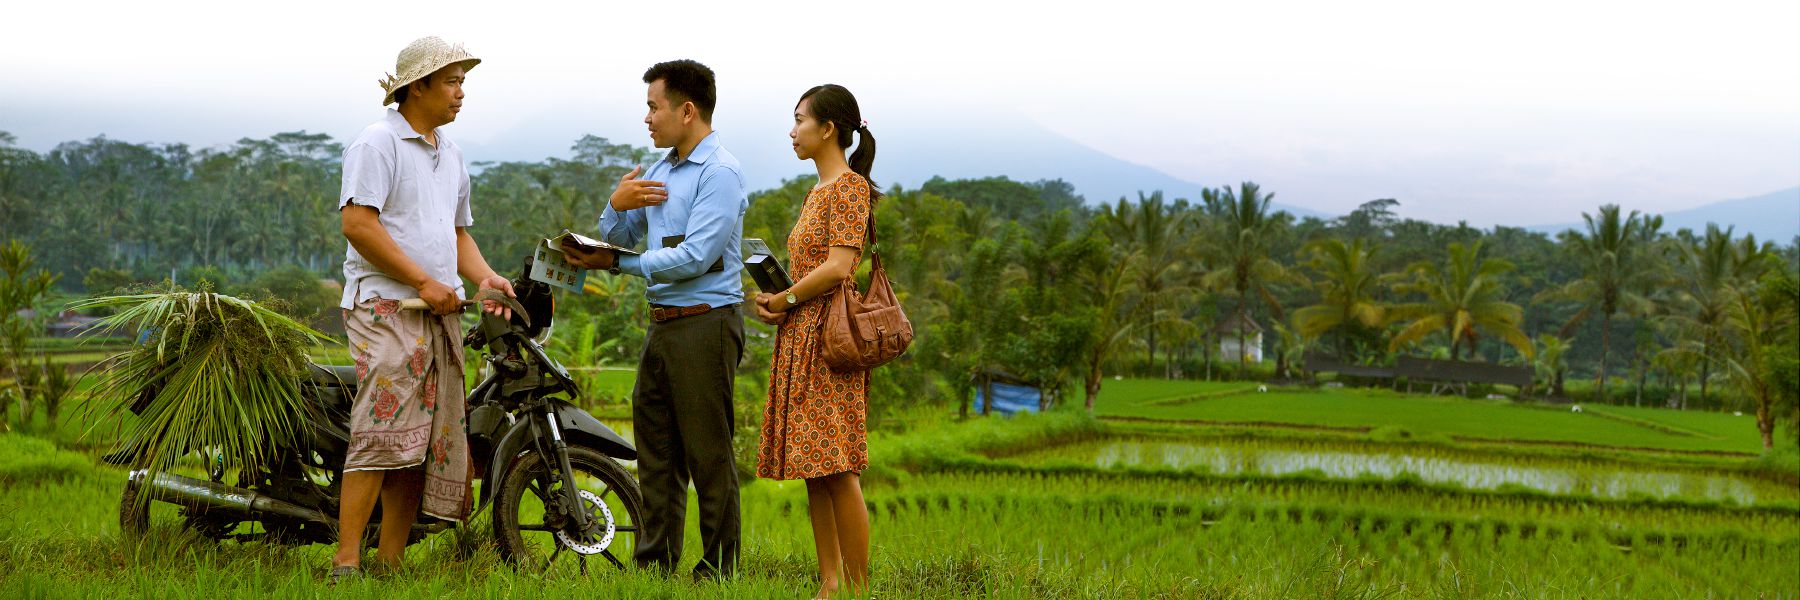 Dva svědkové Jehovovi vydávají svědectví muži na rýžových polích.